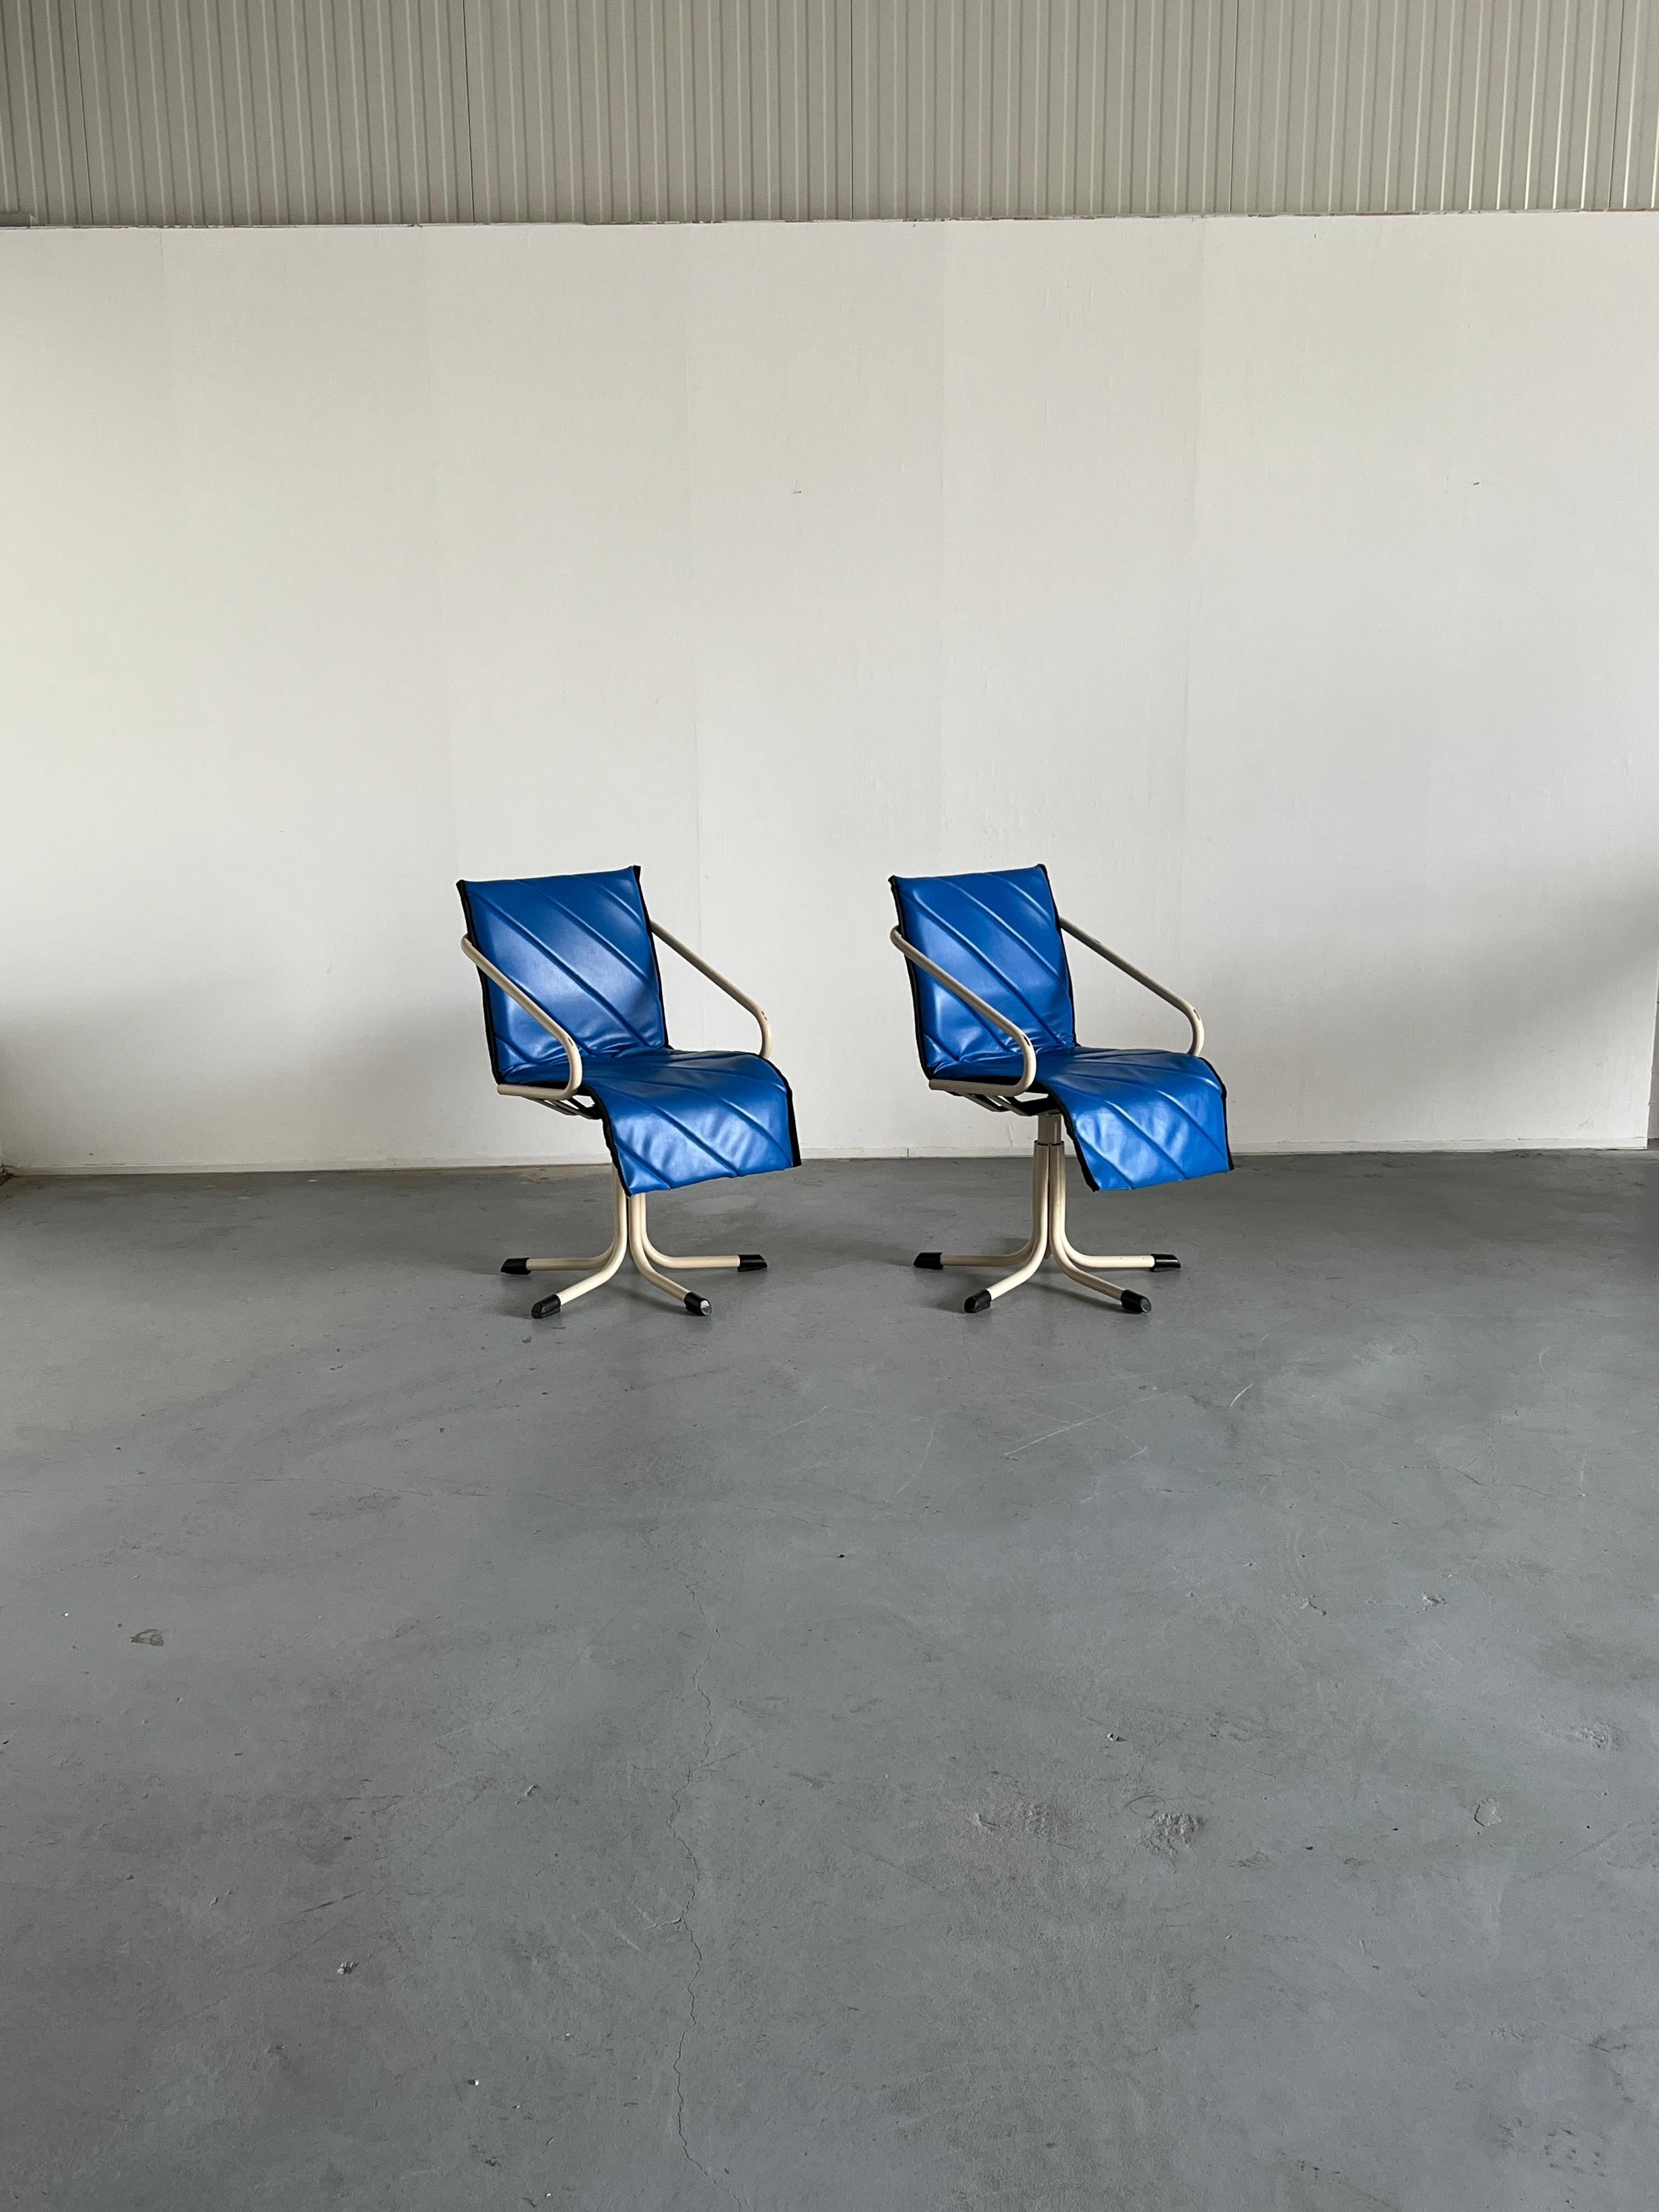 Deux fauteuils pivotants allemands uniques de l'ère spatiale ou de l'ère atomique, avec assise en faux cuir bleu et base en métal blanc. Produit par Müster.

Bien conservée, avec quelques signes d'âge attendus, principalement des rayures de surface